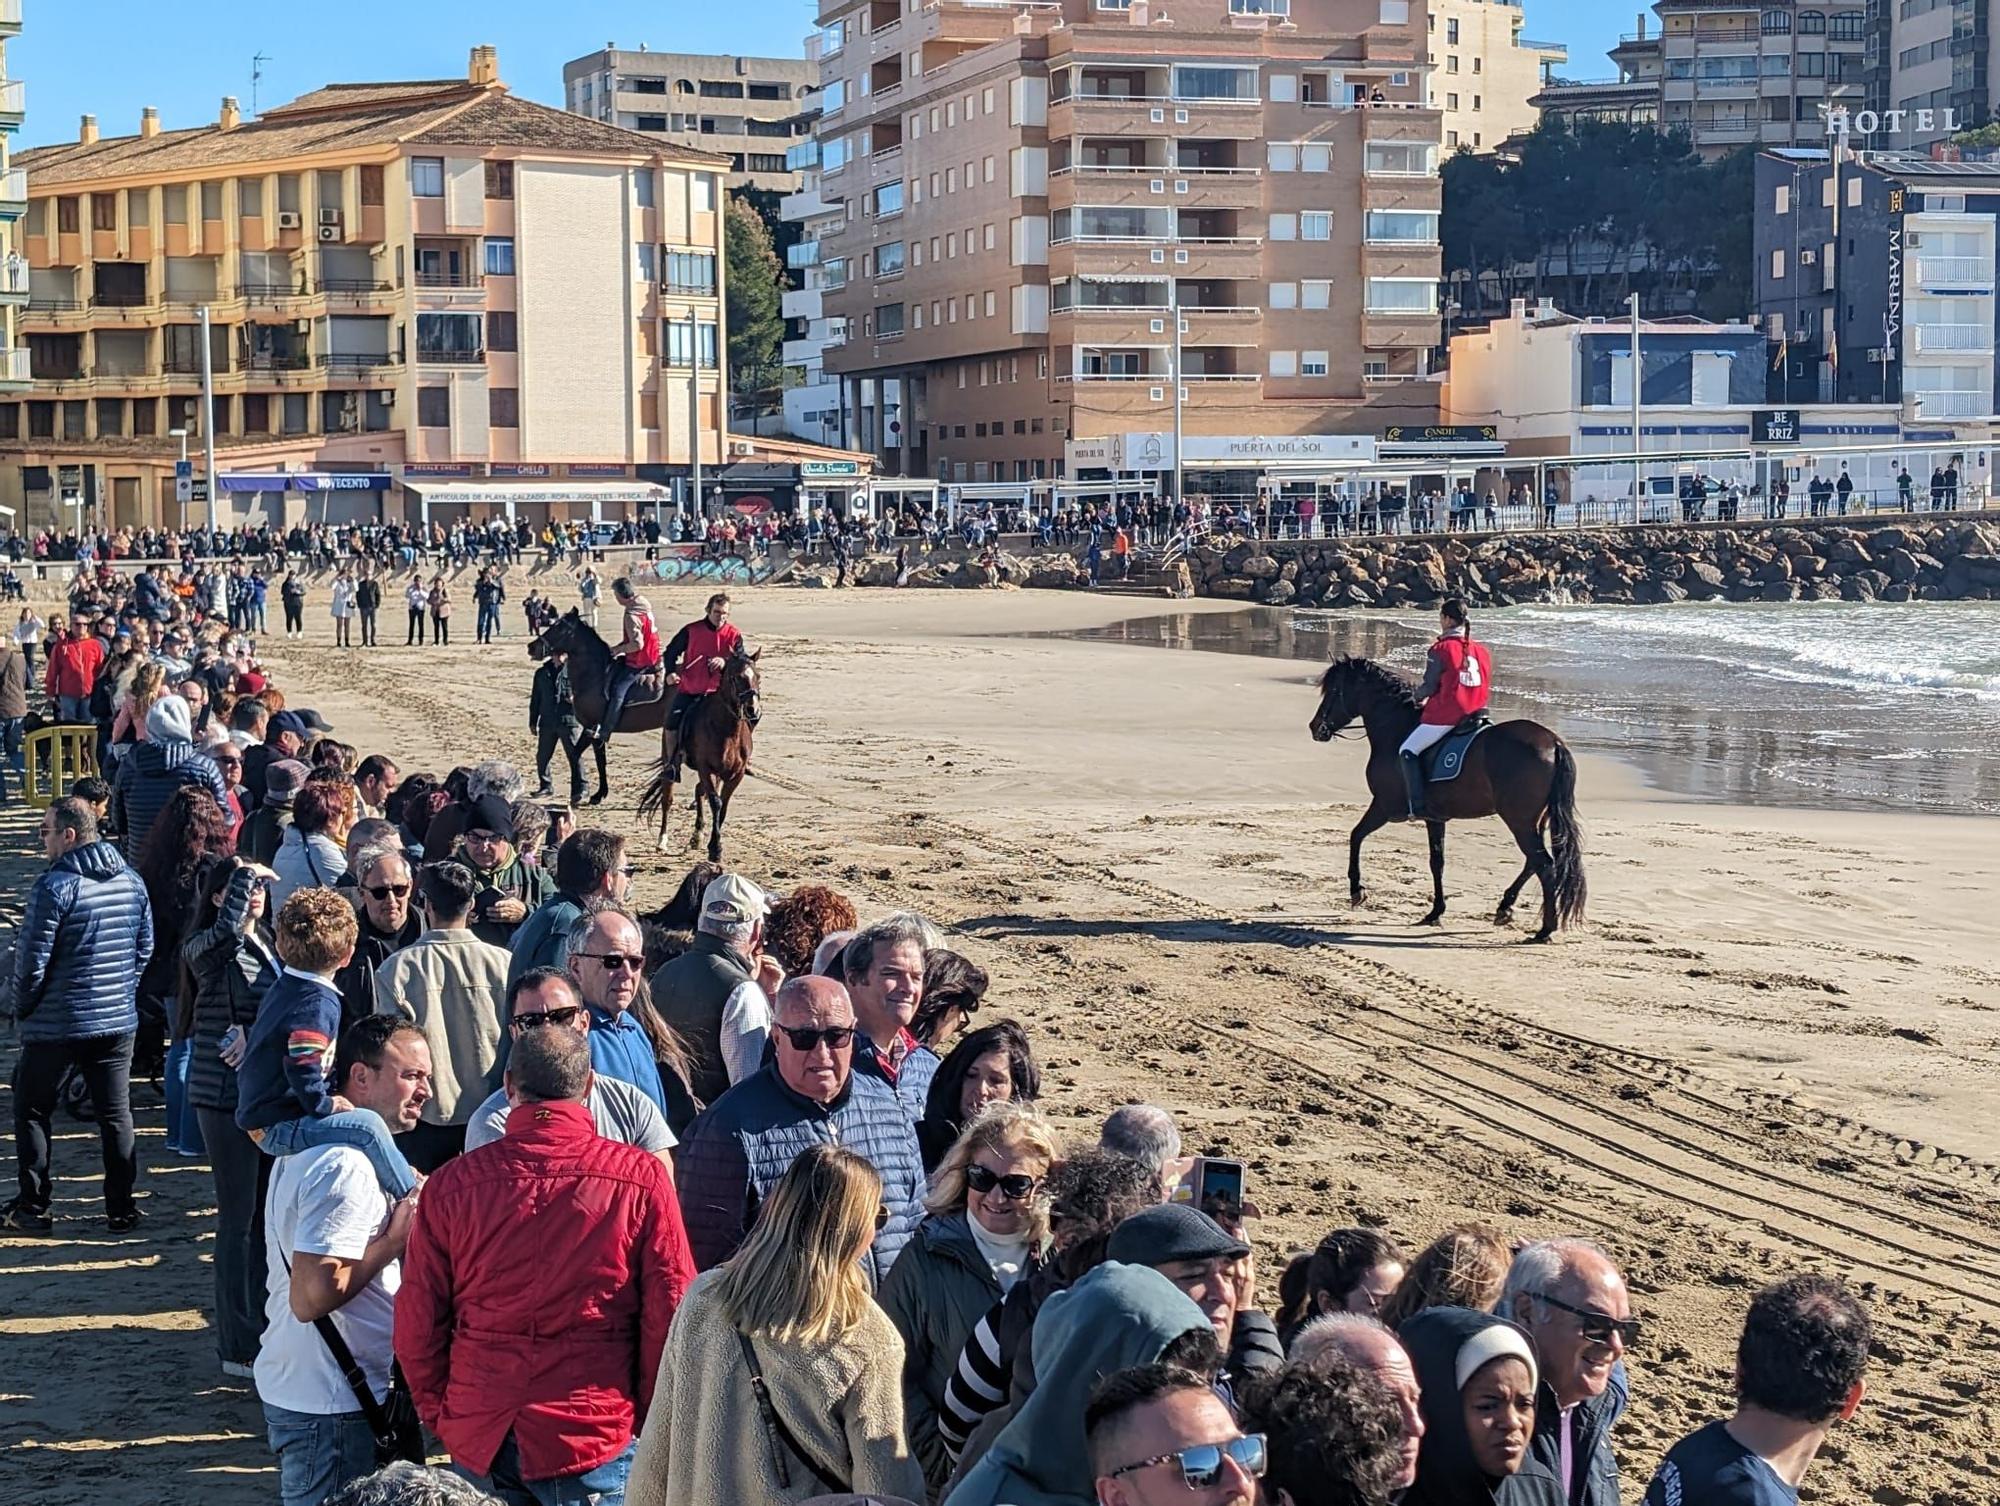 Las espectaculares imágenes de la carrera de caballos y burros en Orpesa